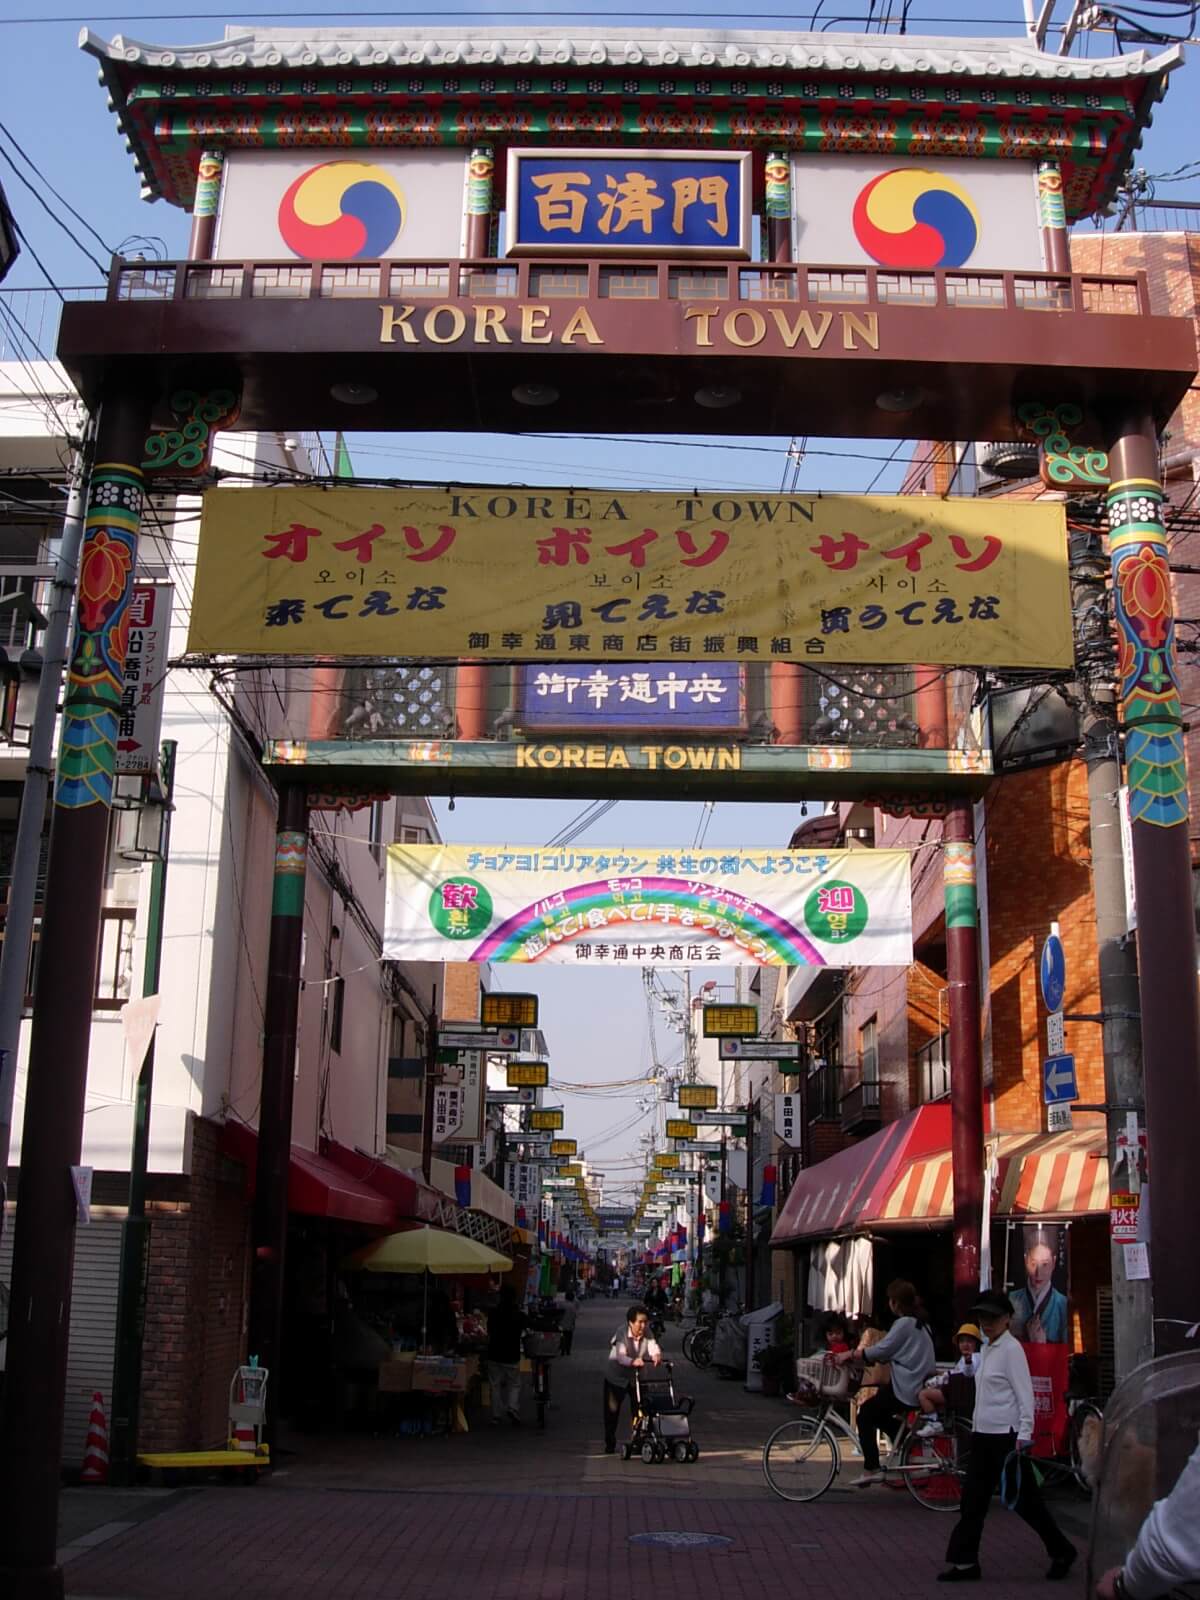 The entrance of a Korea Town in Tsuruhashi